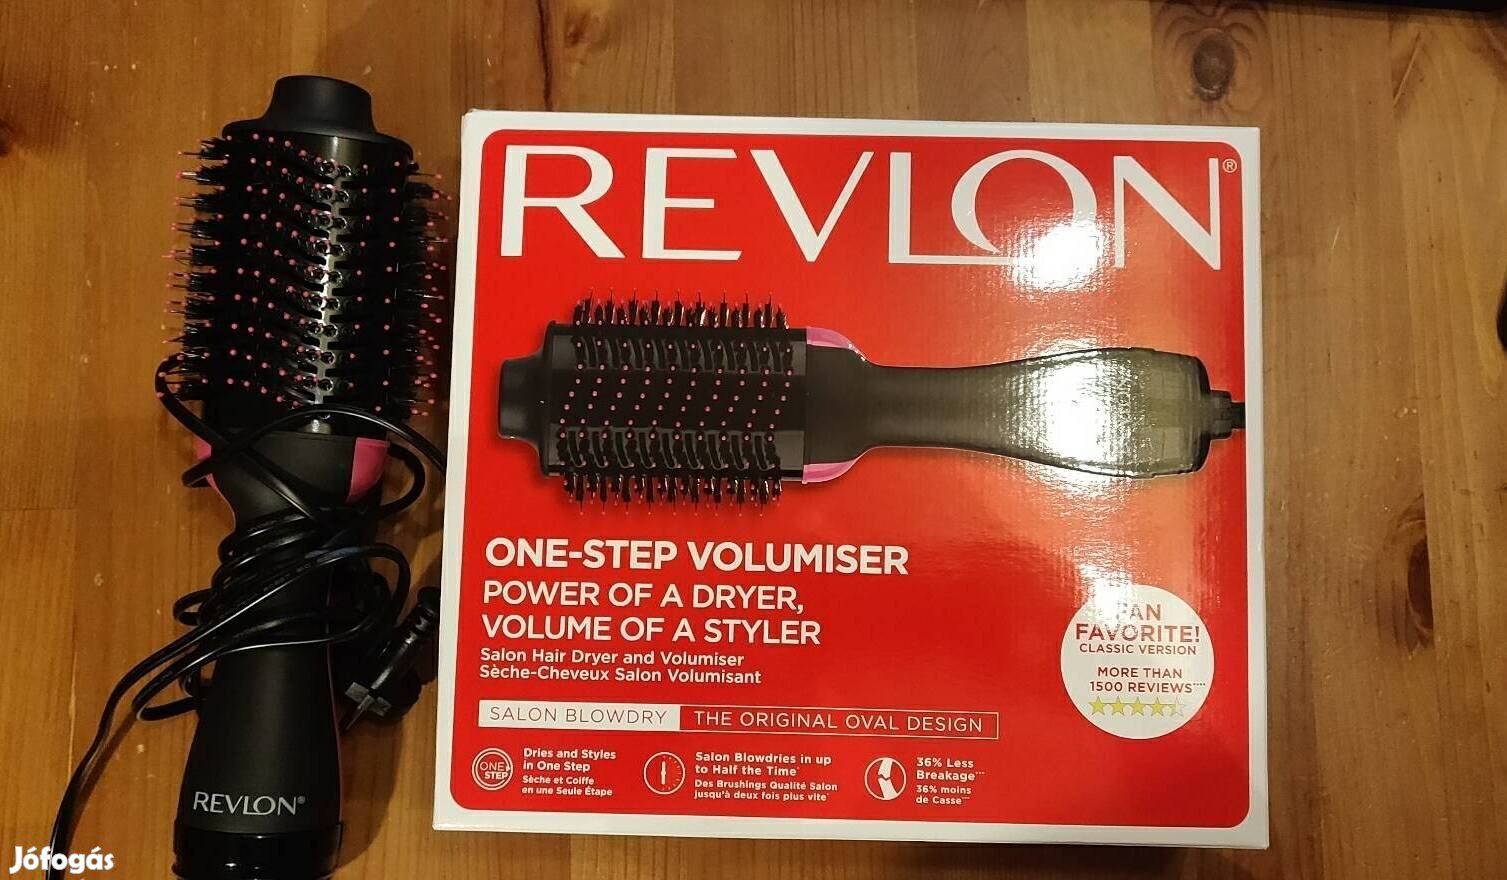 Revlon One-step volumiser